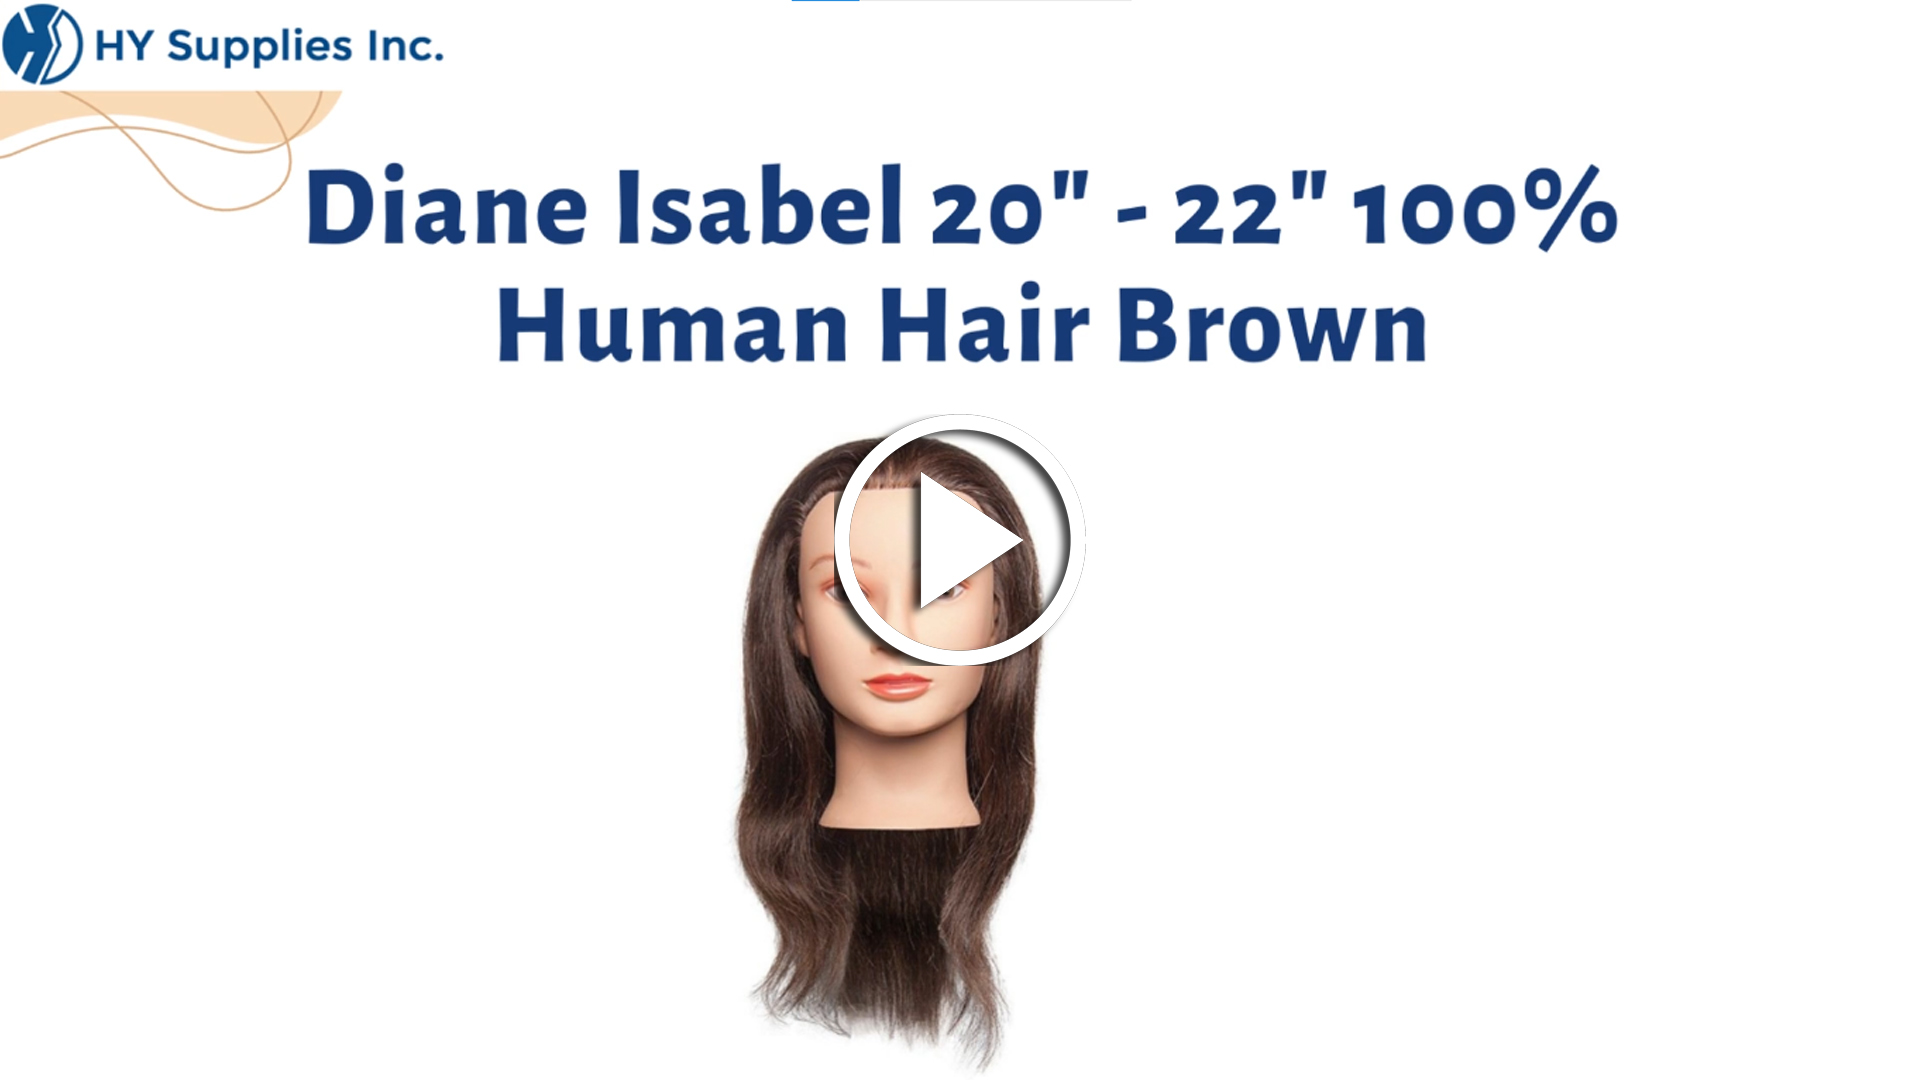 Diane Isabel 20" - 22" 100% Human Hair Brown